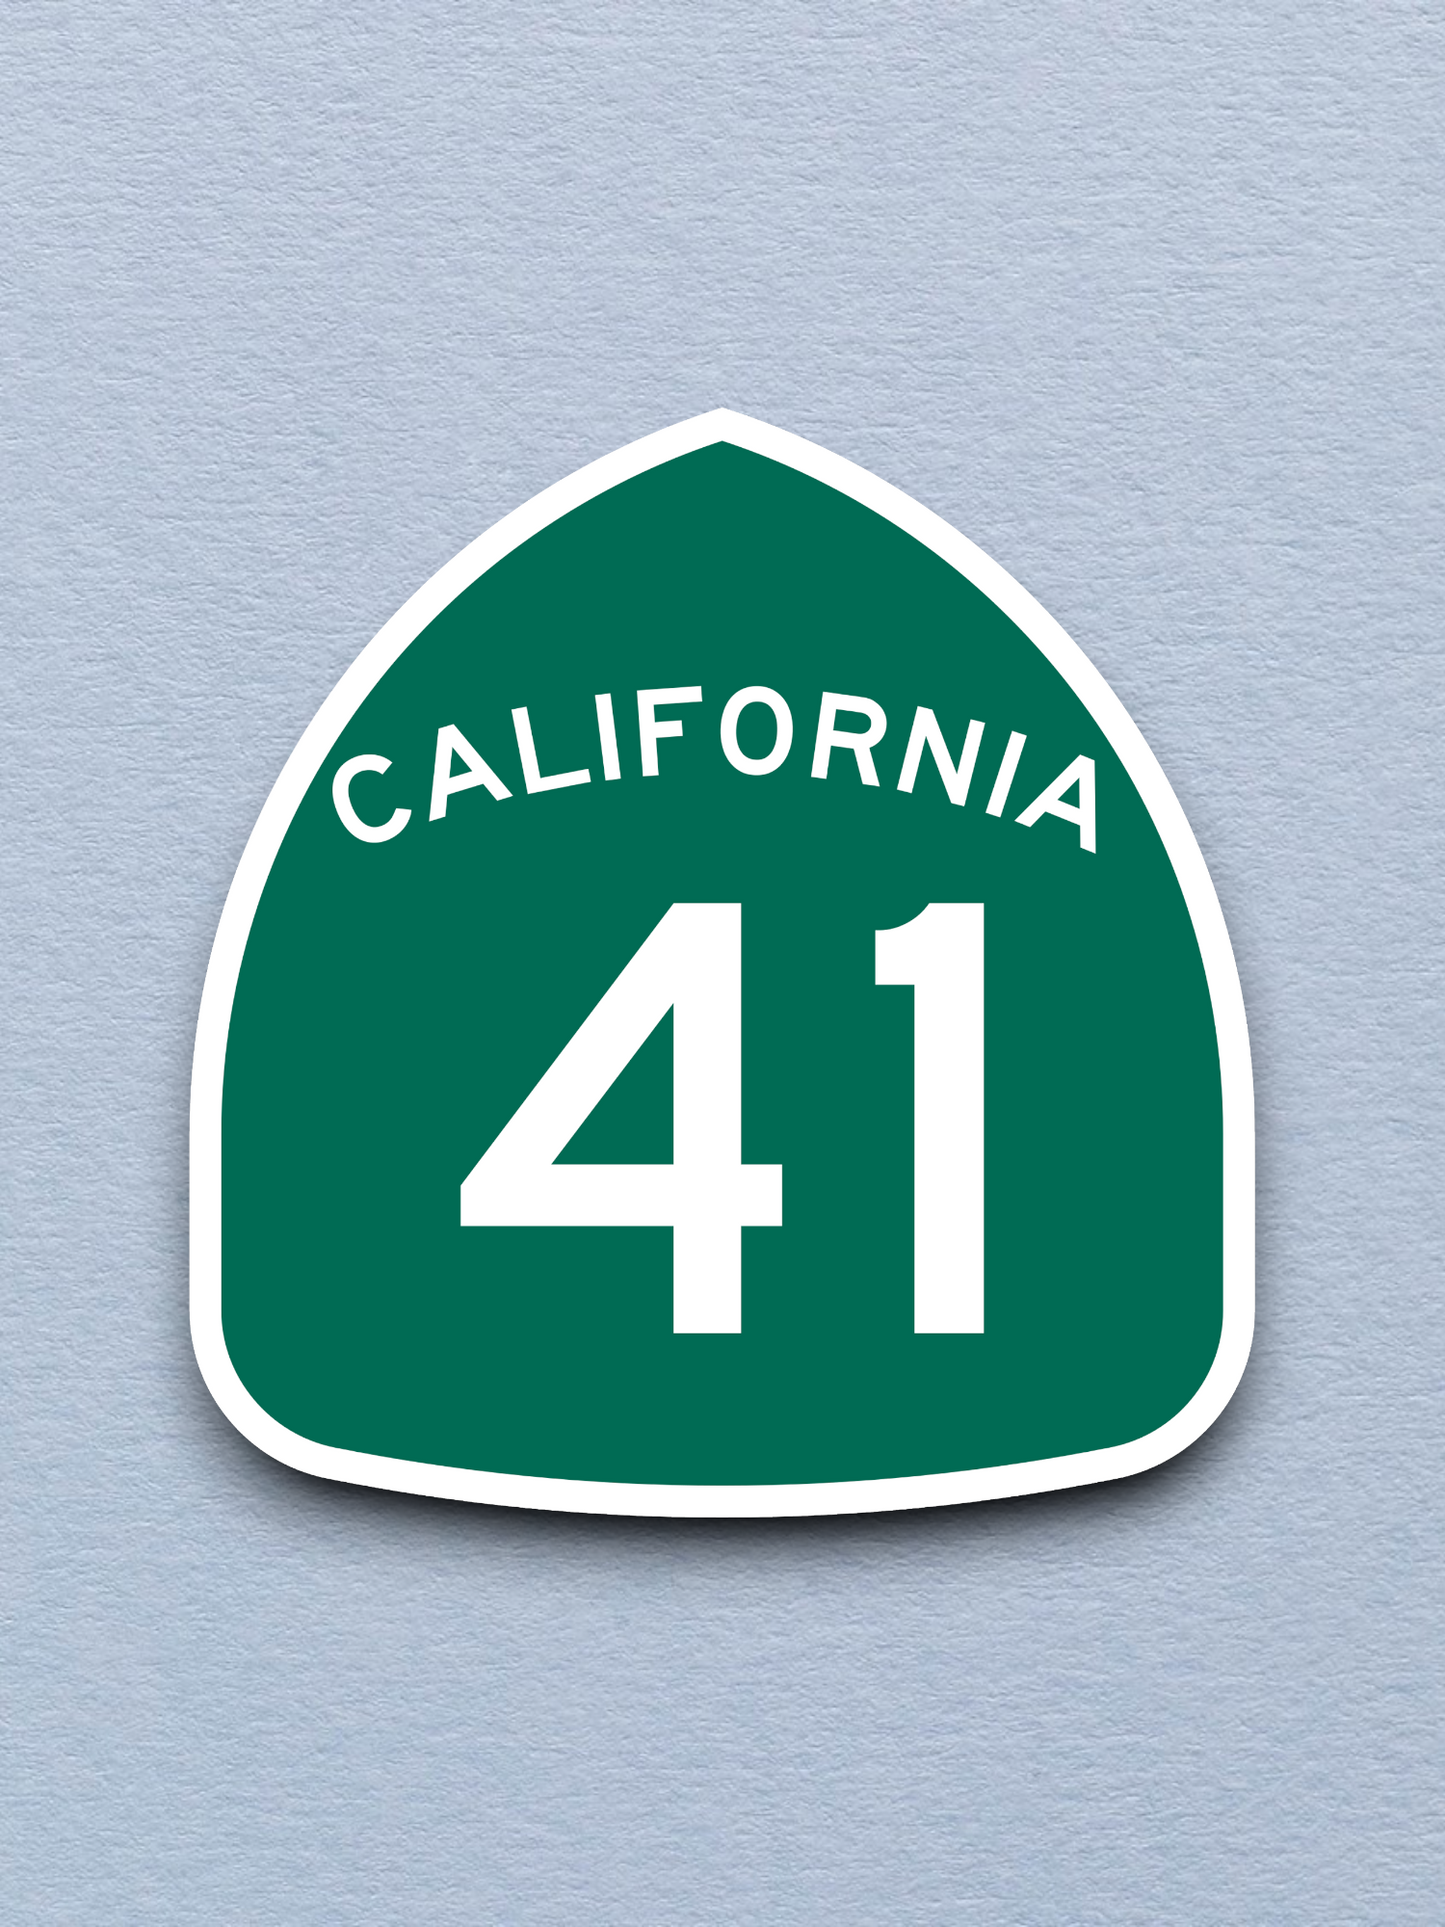 California State Route 41 Sticker